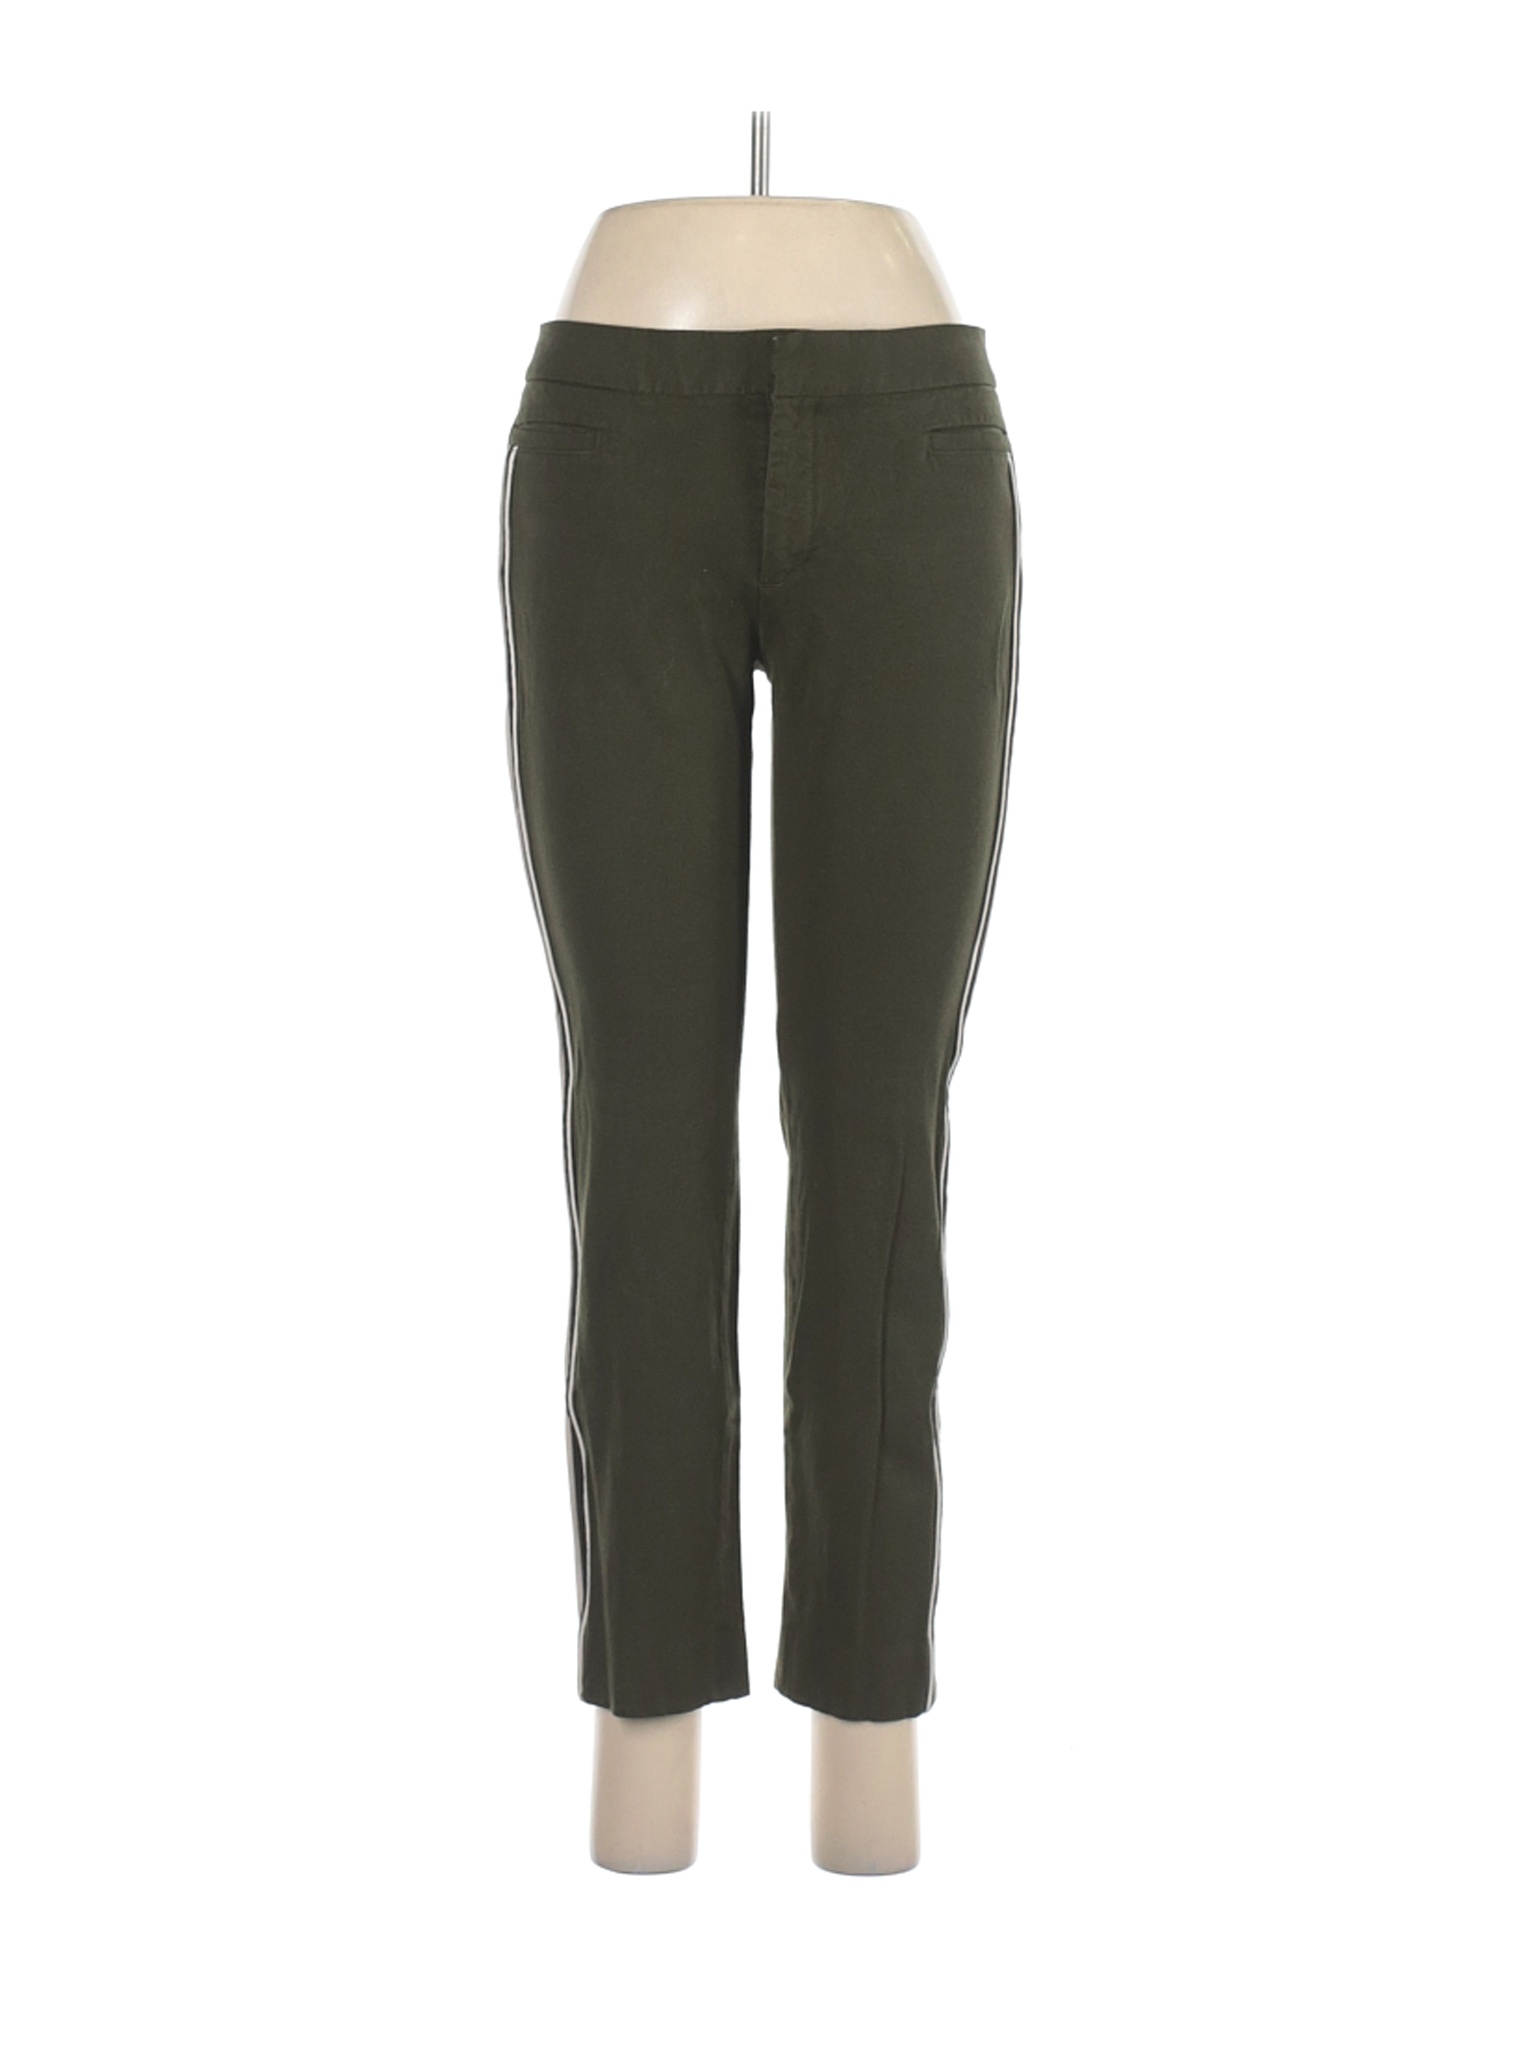 Banana Republic Women Green Casual Pants 6 | eBay